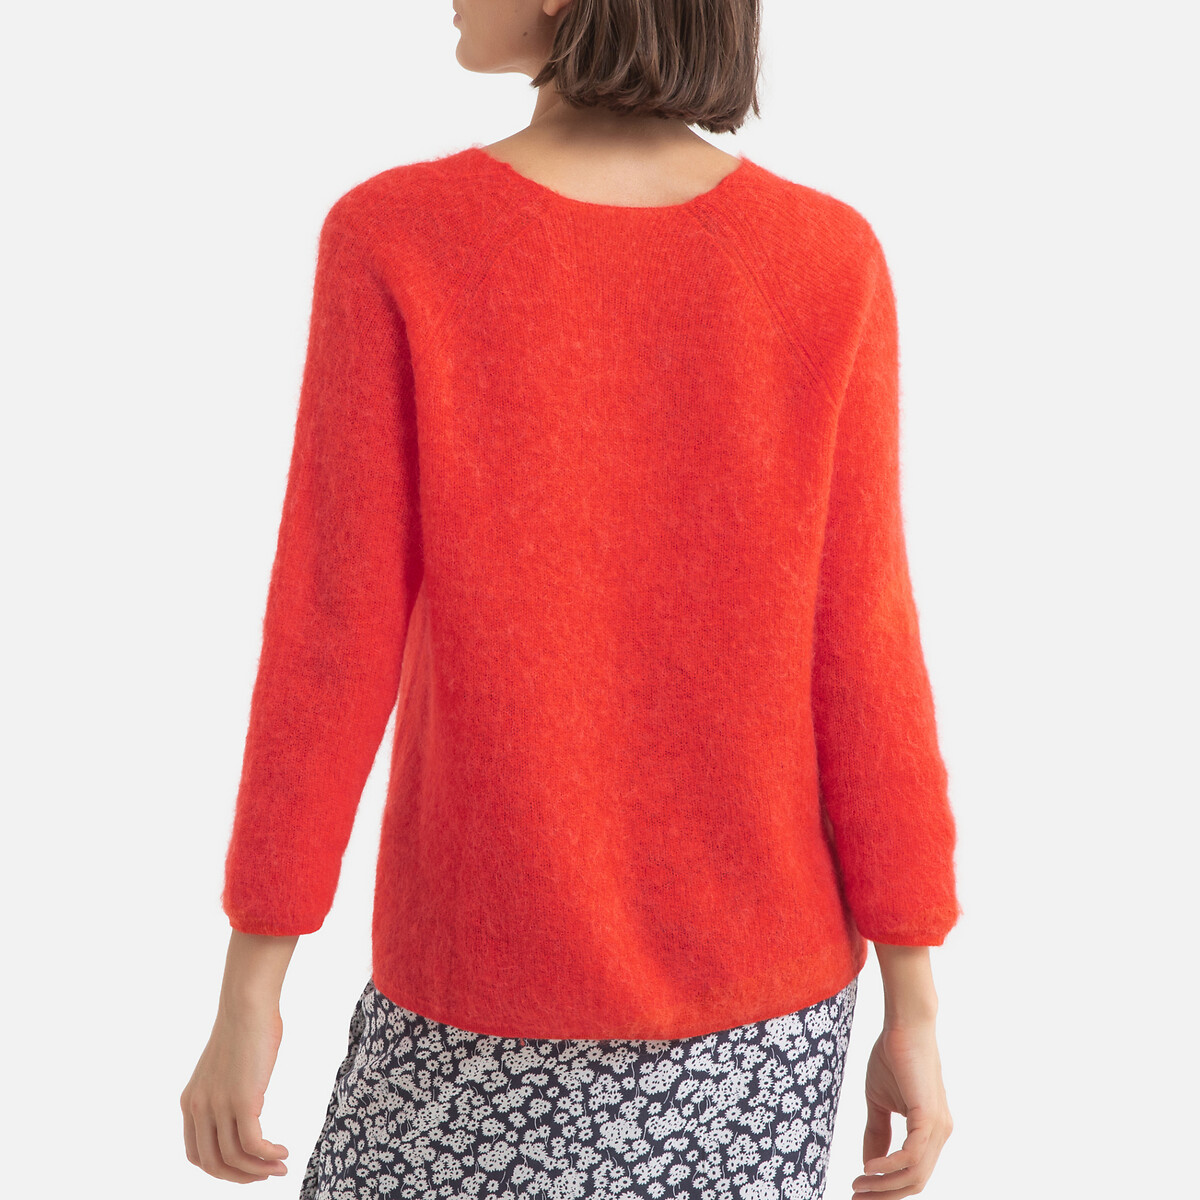 Пуловер LaRedoute С v-образным вырезом из плотного трикотажа ALTEA 0(XS) красный, размер 0(XS) С v-образным вырезом из плотного трикотажа ALTEA 0(XS) красный - фото 4